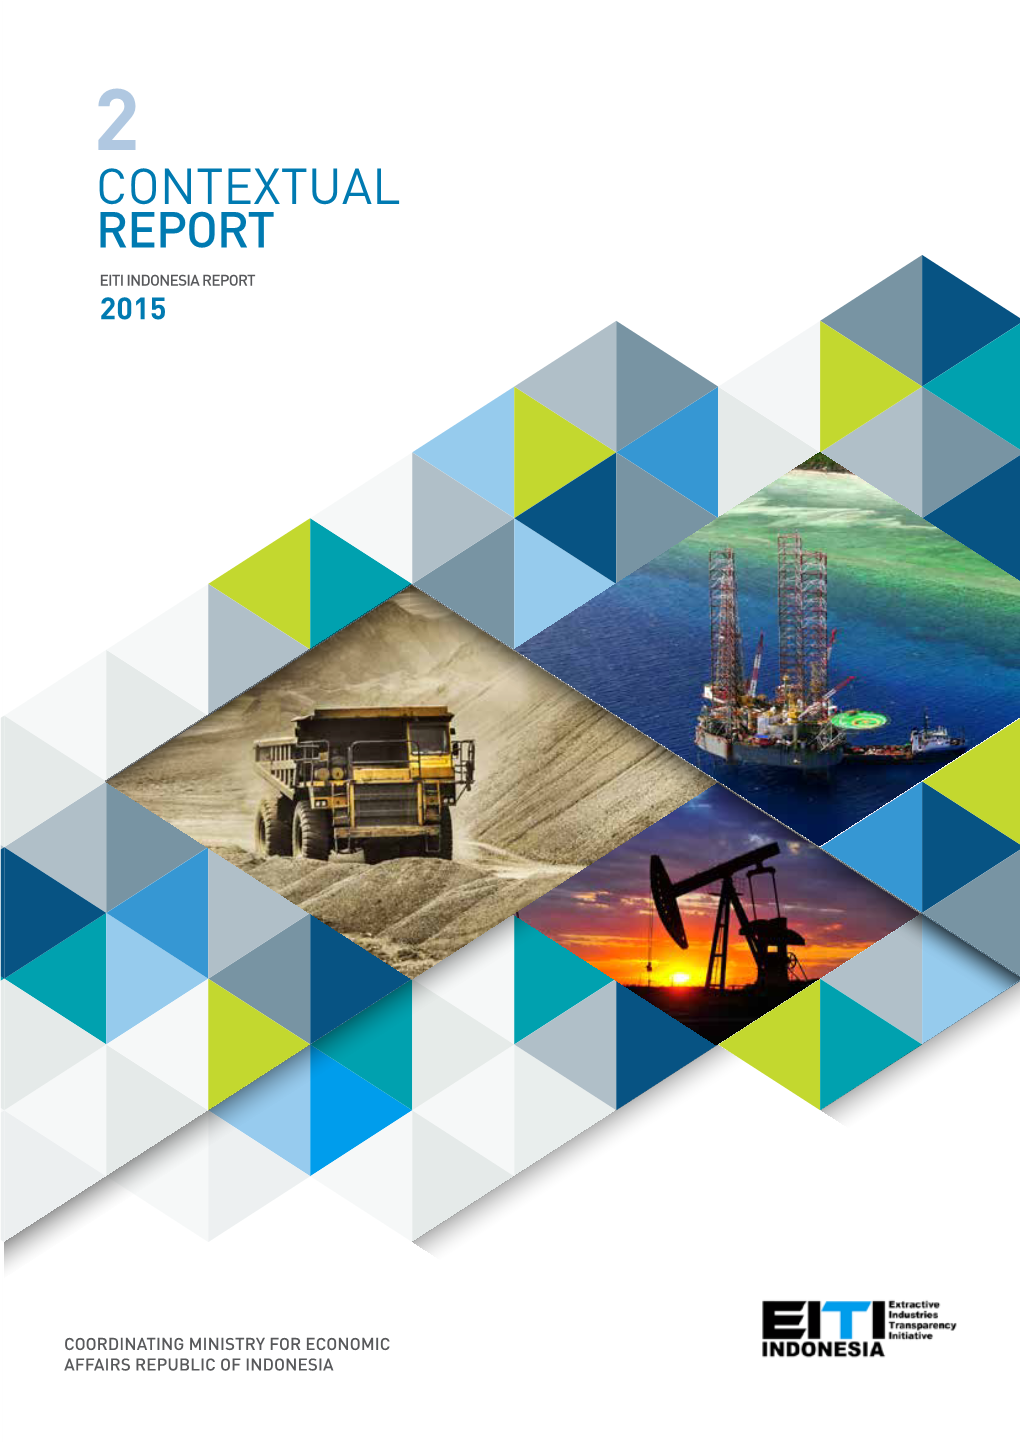 Contextual Report Eiti Indonesia Report 2015